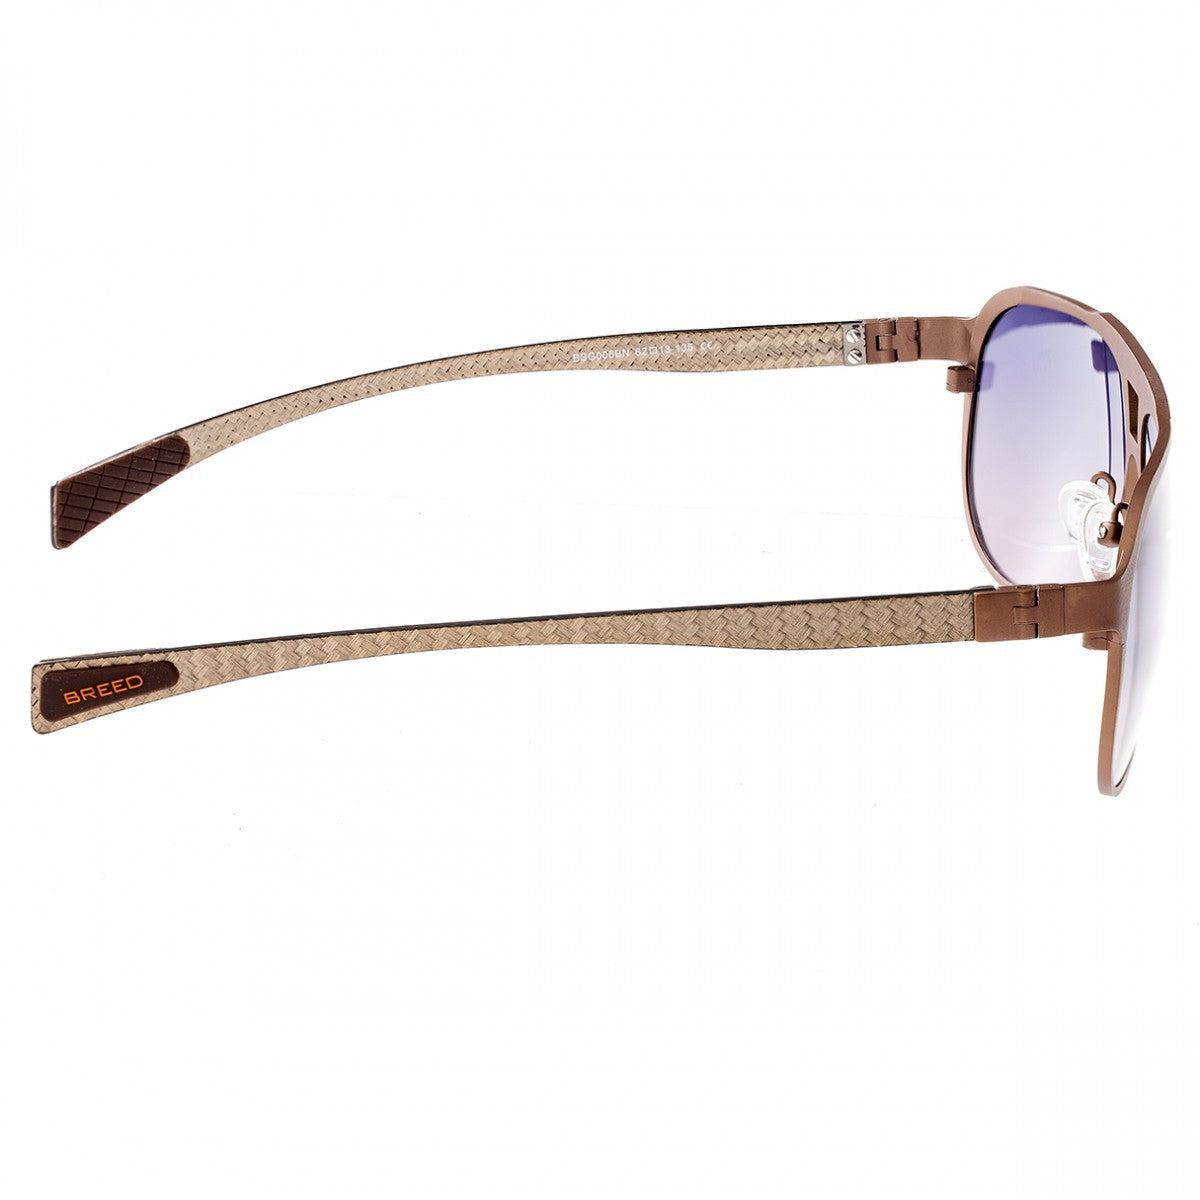 Breed Apollo Titanium and Carbon Fiber Polarized Sunglasses - Brown/Purple - BSG006CP